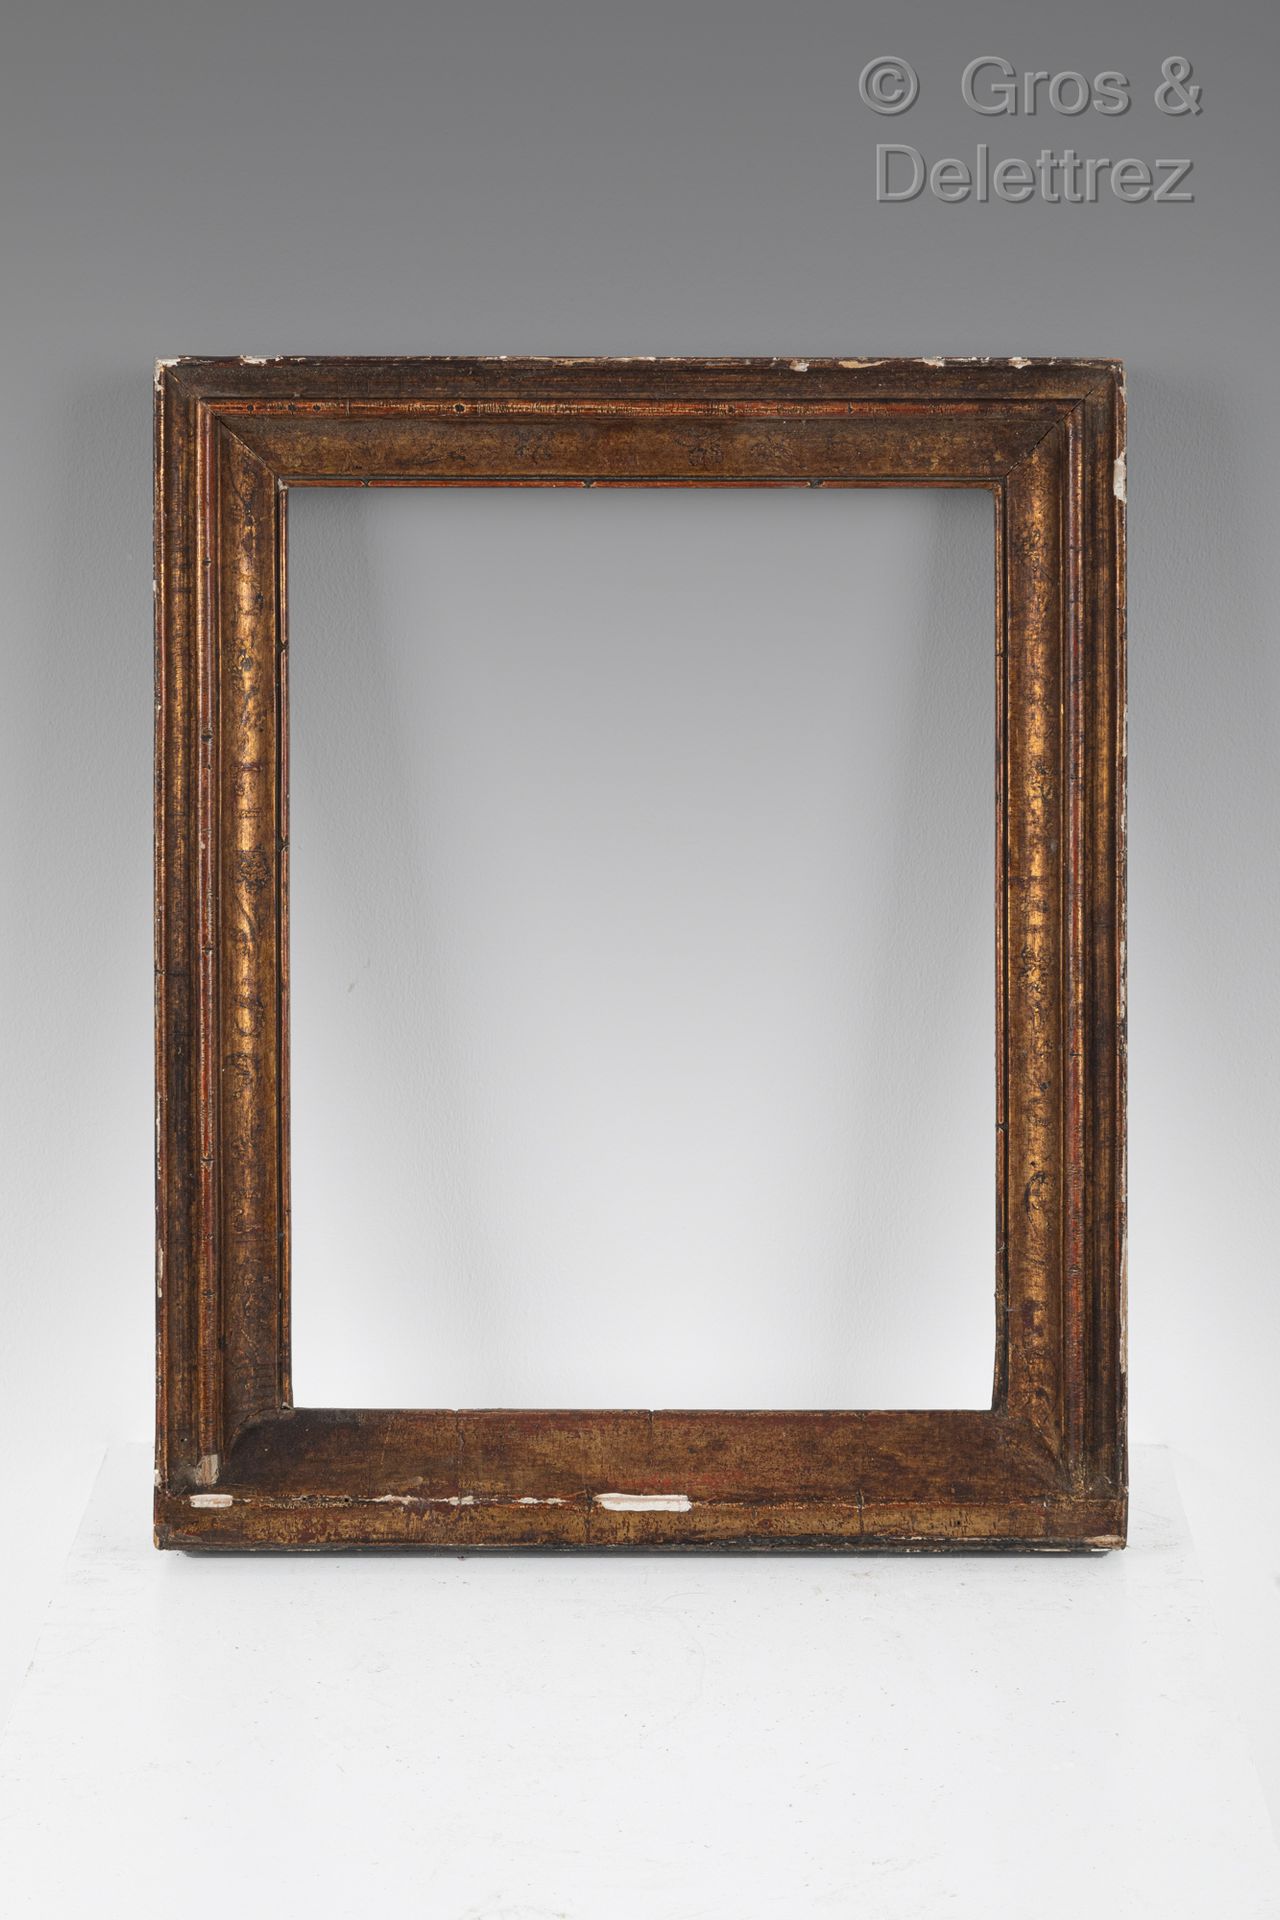 Null 镀金和模制的木制帐幕框架。

19世纪

24,2 x 18,5 x 3,5厘米。